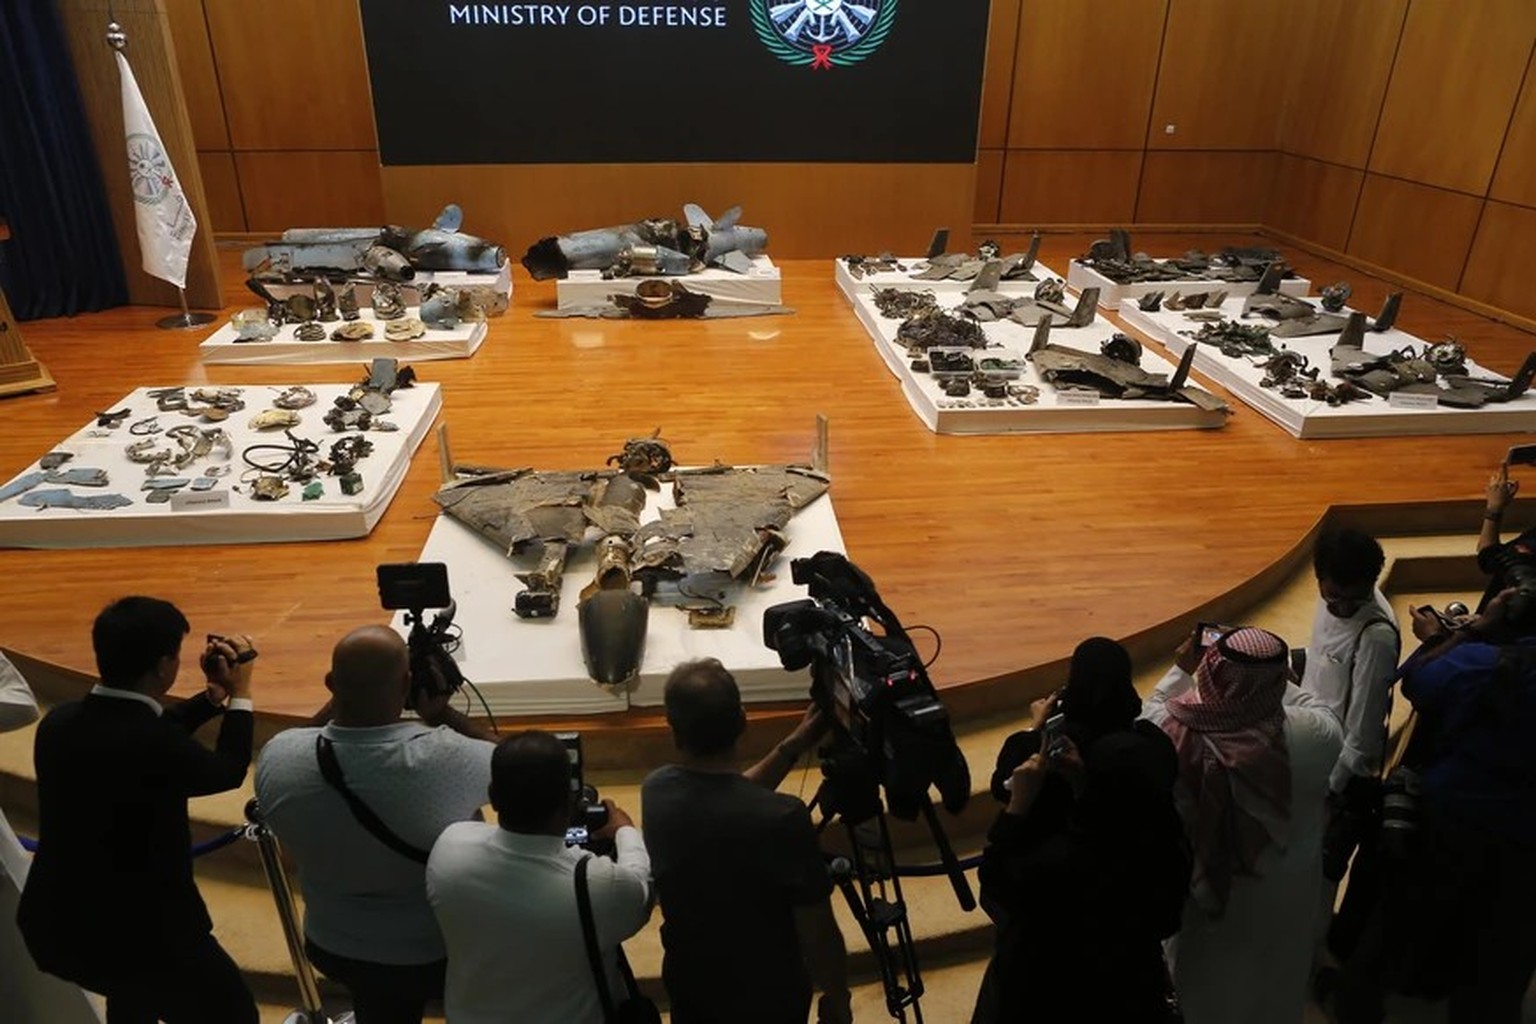 Journalisten filmen die Überreste der Drohnen und Marschflugkörper, die beim Angriff gegen die Aramco-Anlage in Saudi-Arabien verwendet wurden.